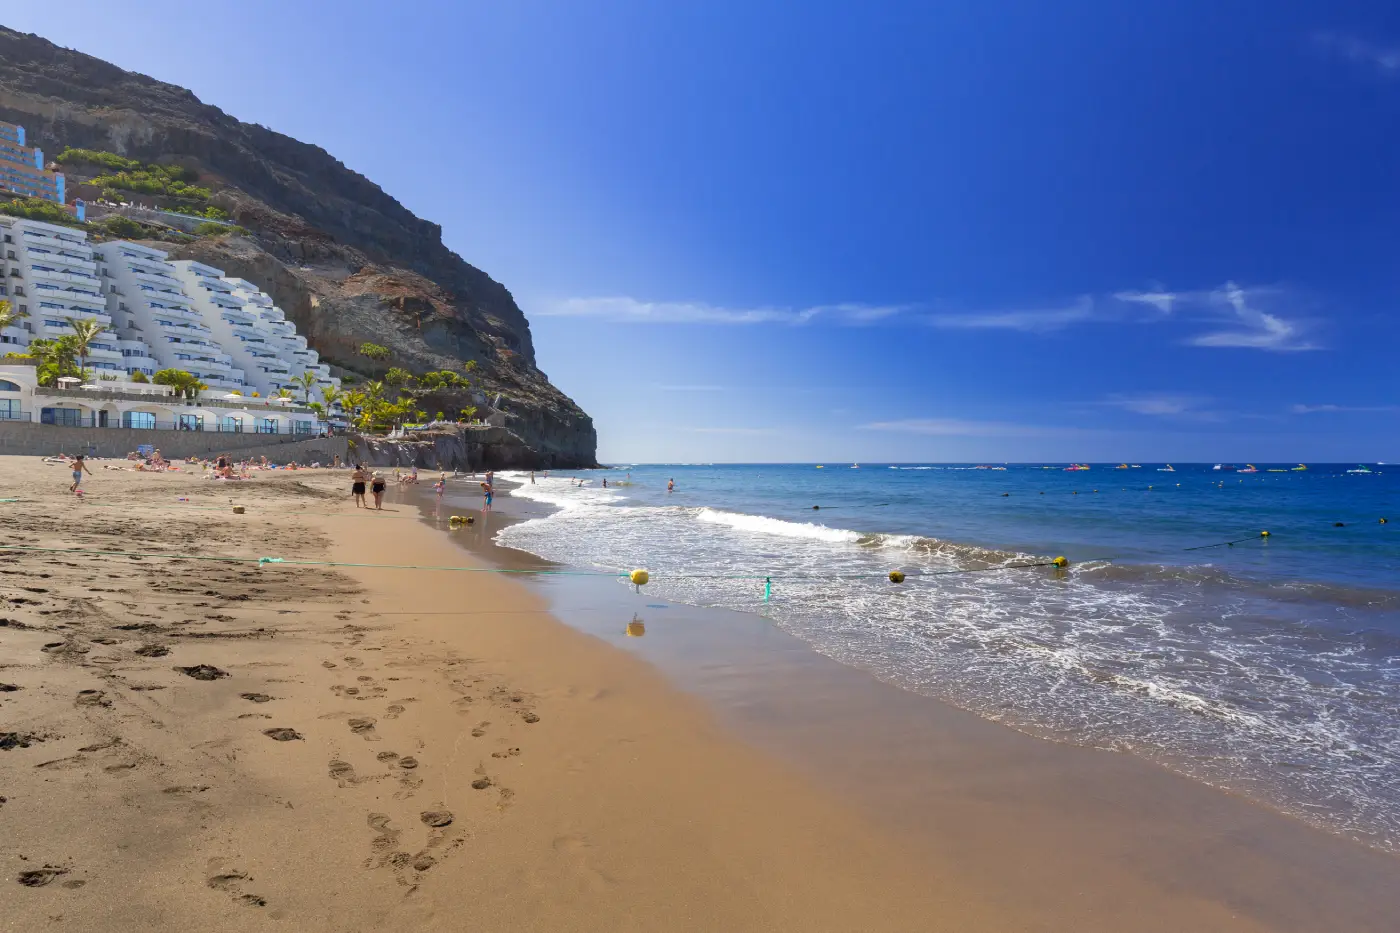 Playa de Taurito, één van de mooiste stranden van Gran Canaria